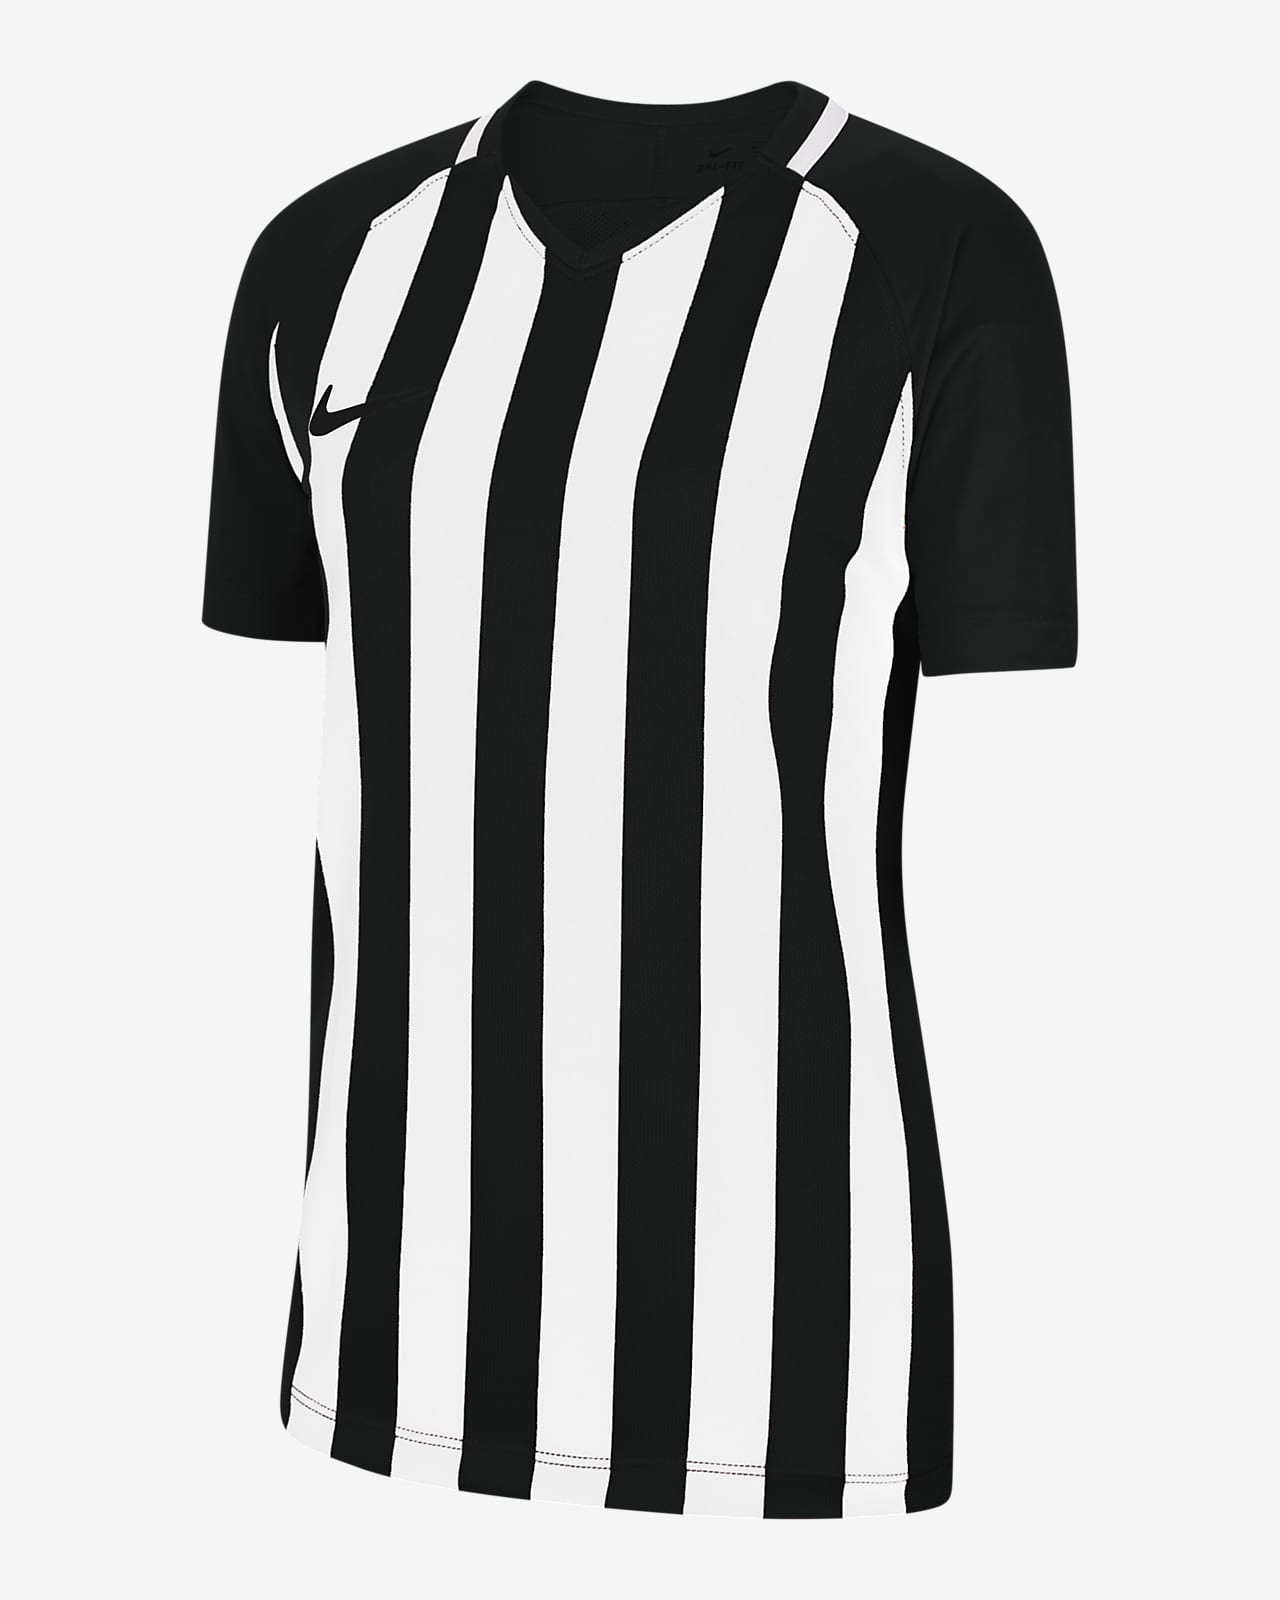 Nike公式 ナイキ ディビジョン 3 ジュニア ストライプ サッカーユニフォーム オンラインストア 通販サイト